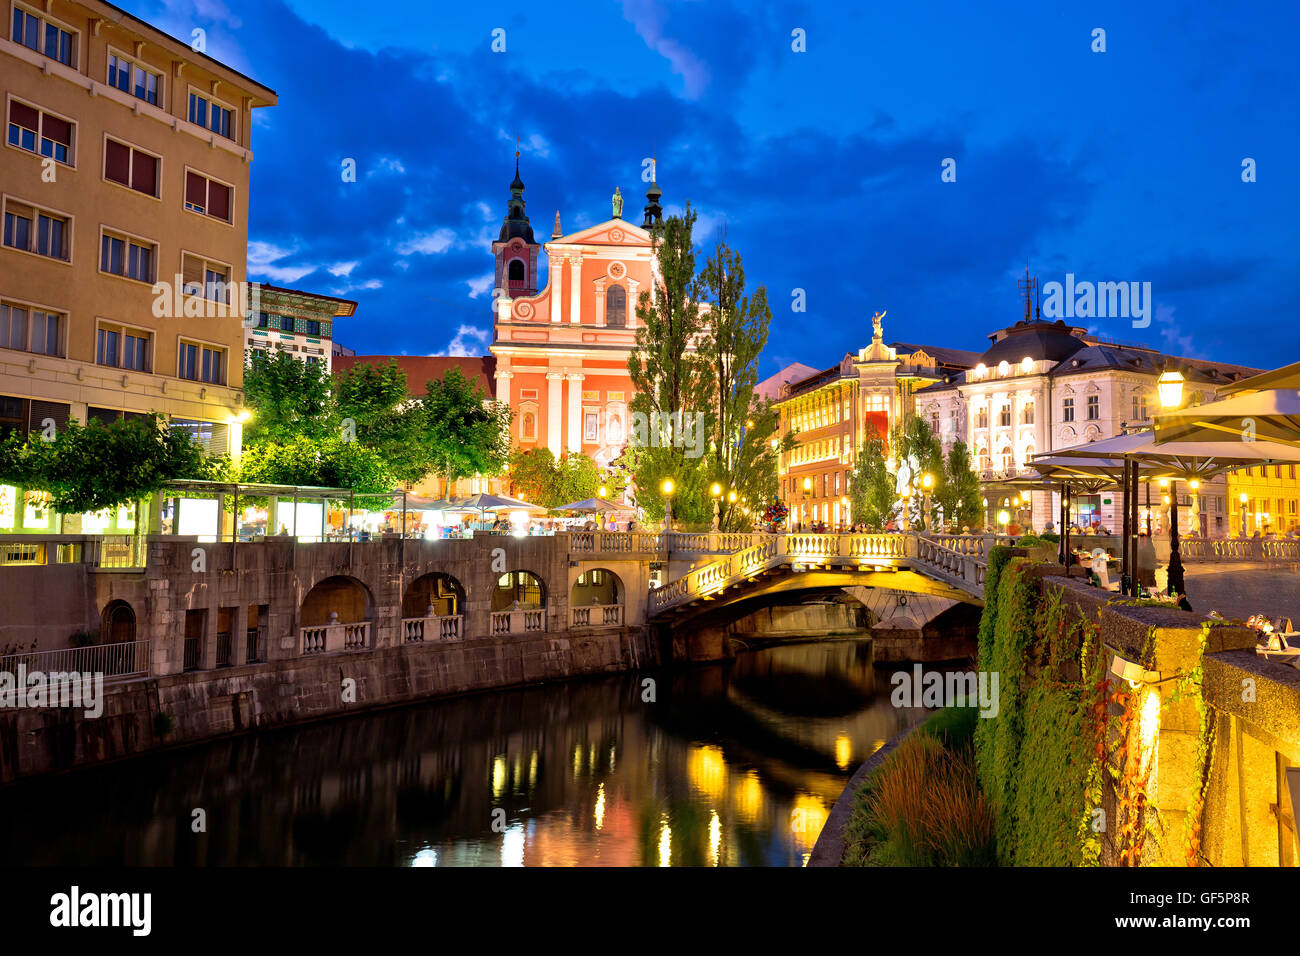 Tromostovje bridge and Presern square in Ljubljana evening view, capital of Slovenia Stock Photo